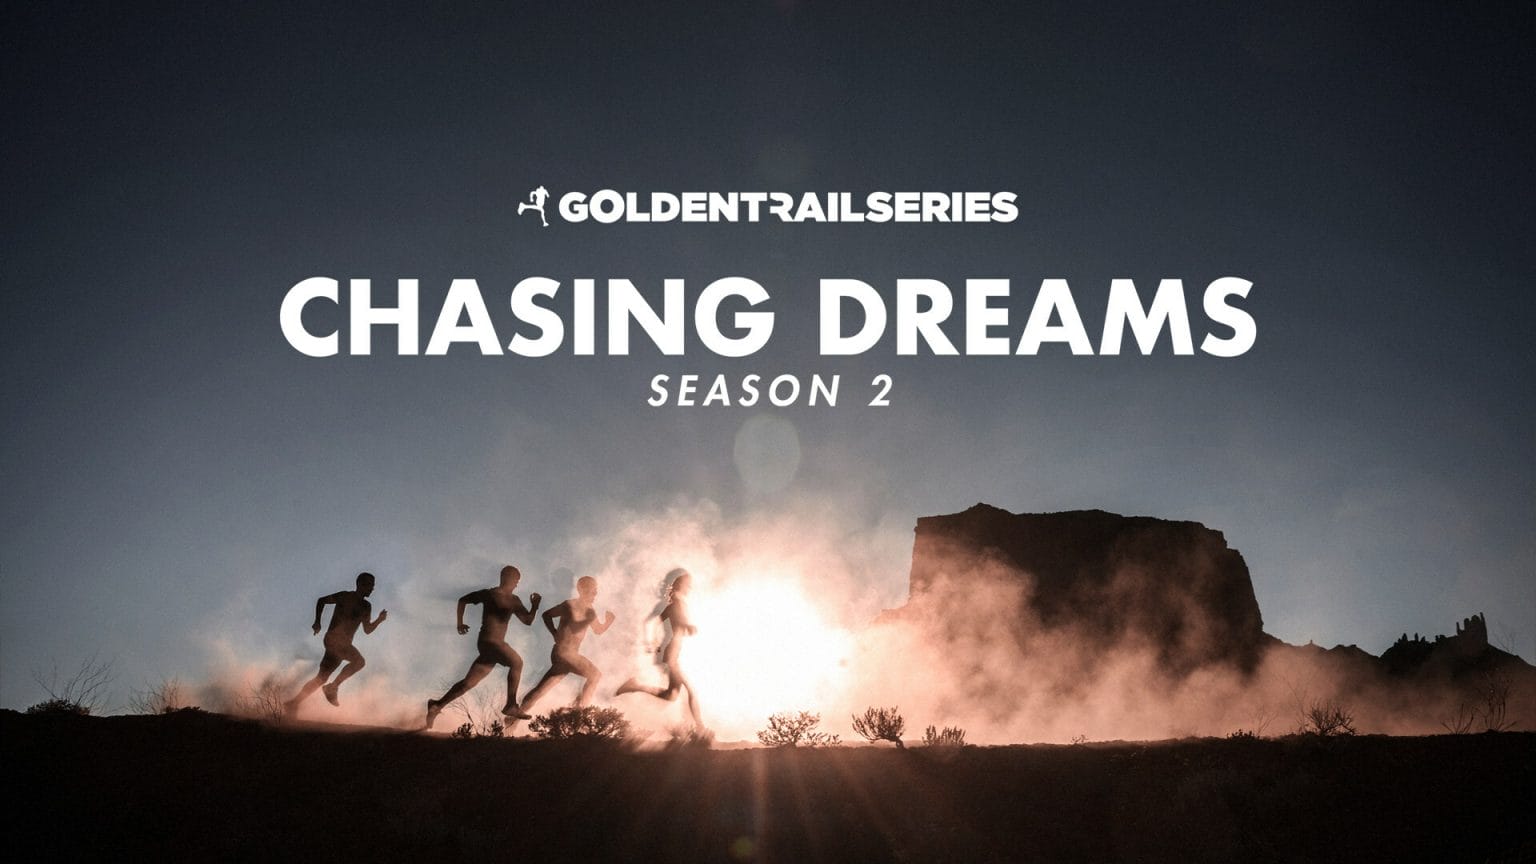 La saison 2 de Chaising Dreams arrive en janvier